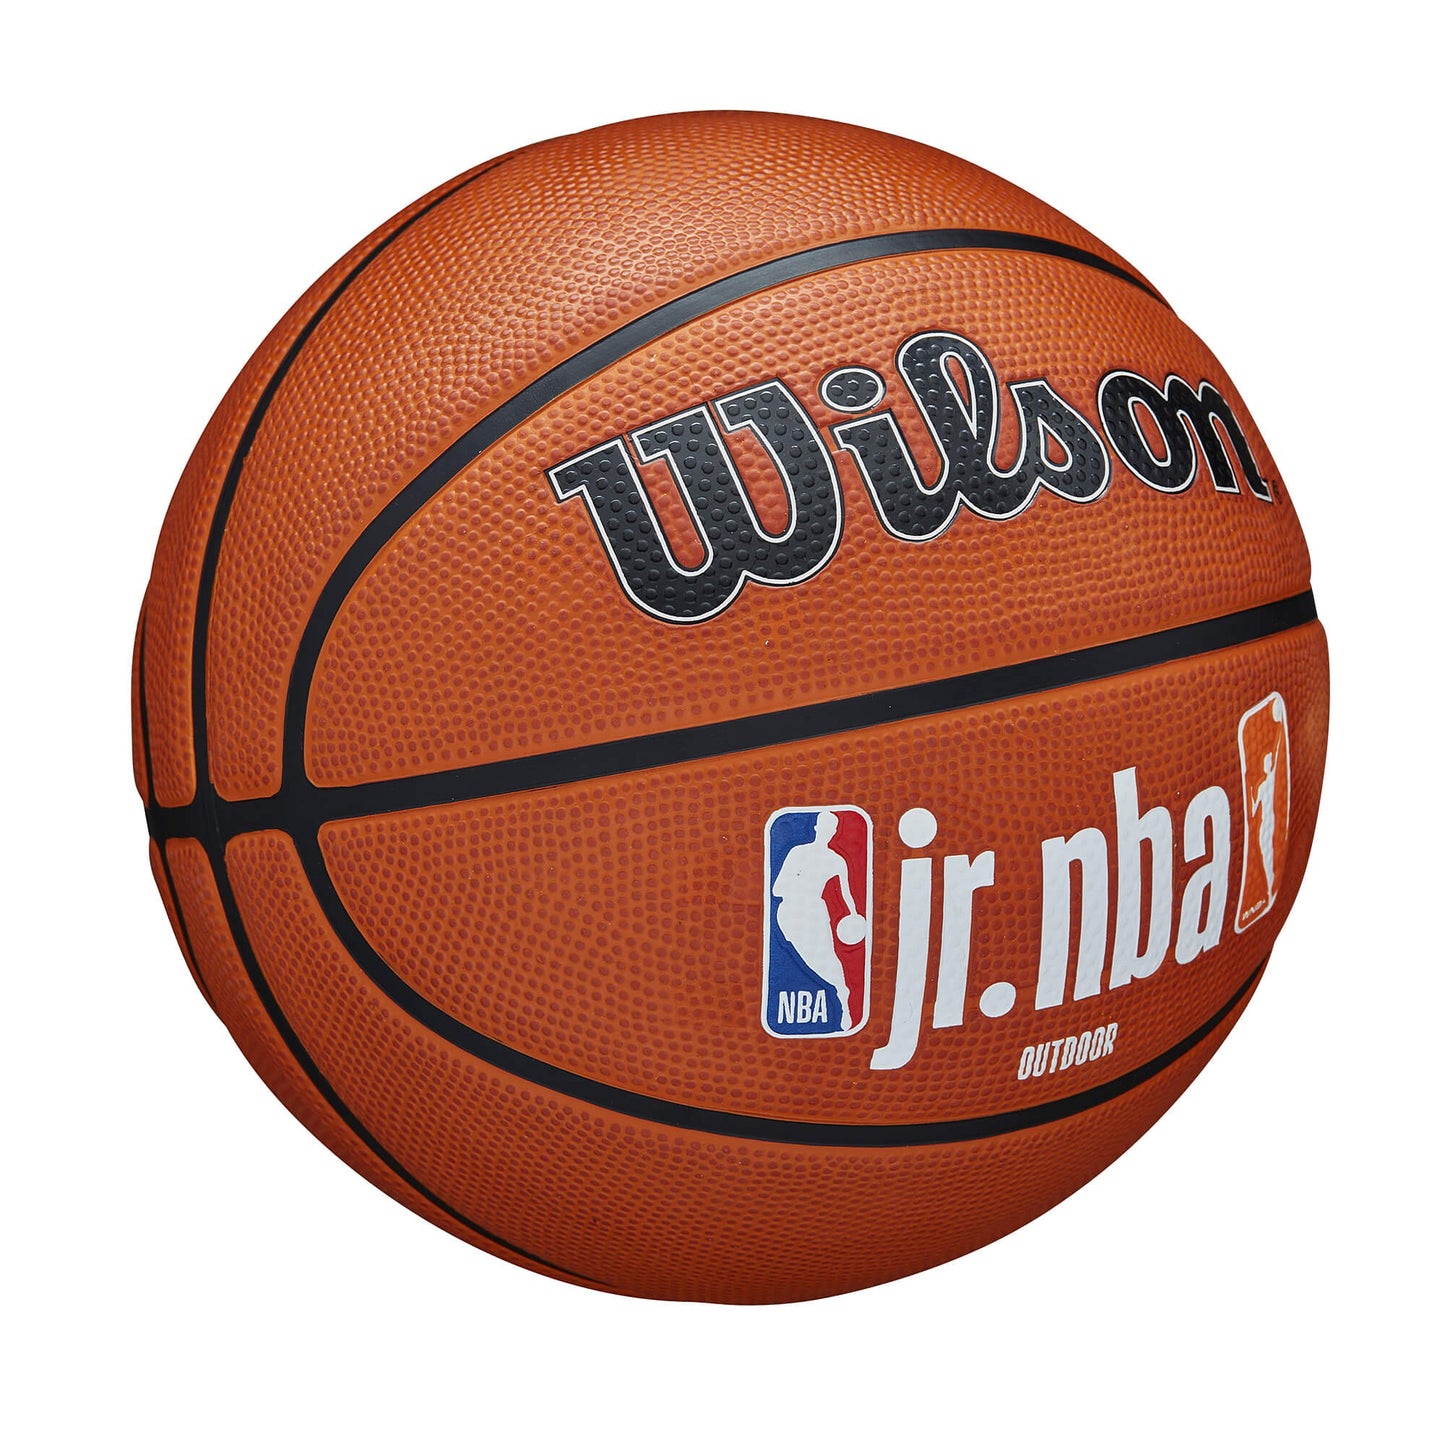 Wilson Jr. NBA Fam Logo Auth Outdoor Bskt. (sz. 5) Brown